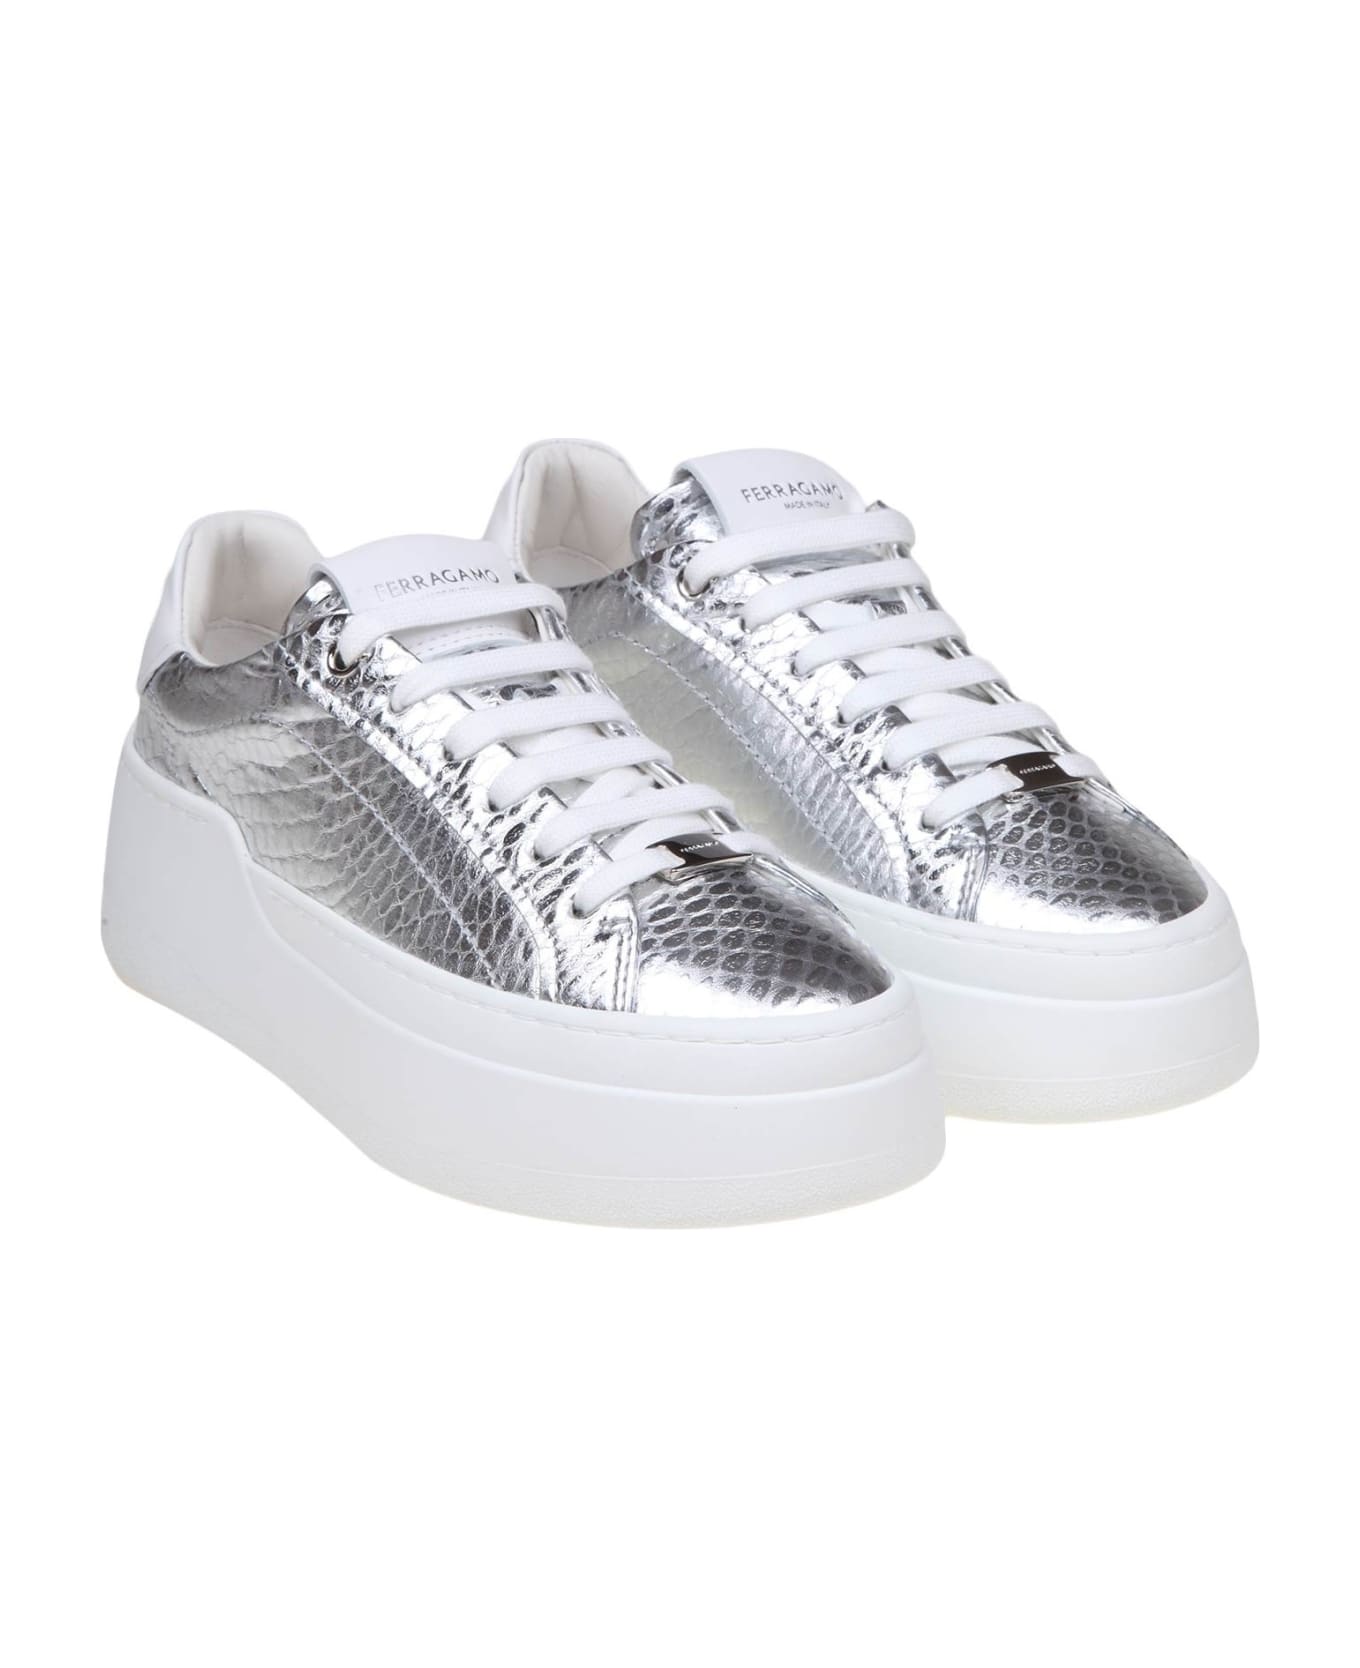 Ferragamo Sneakers Dahlia In Pelle Colore Argento - Silver